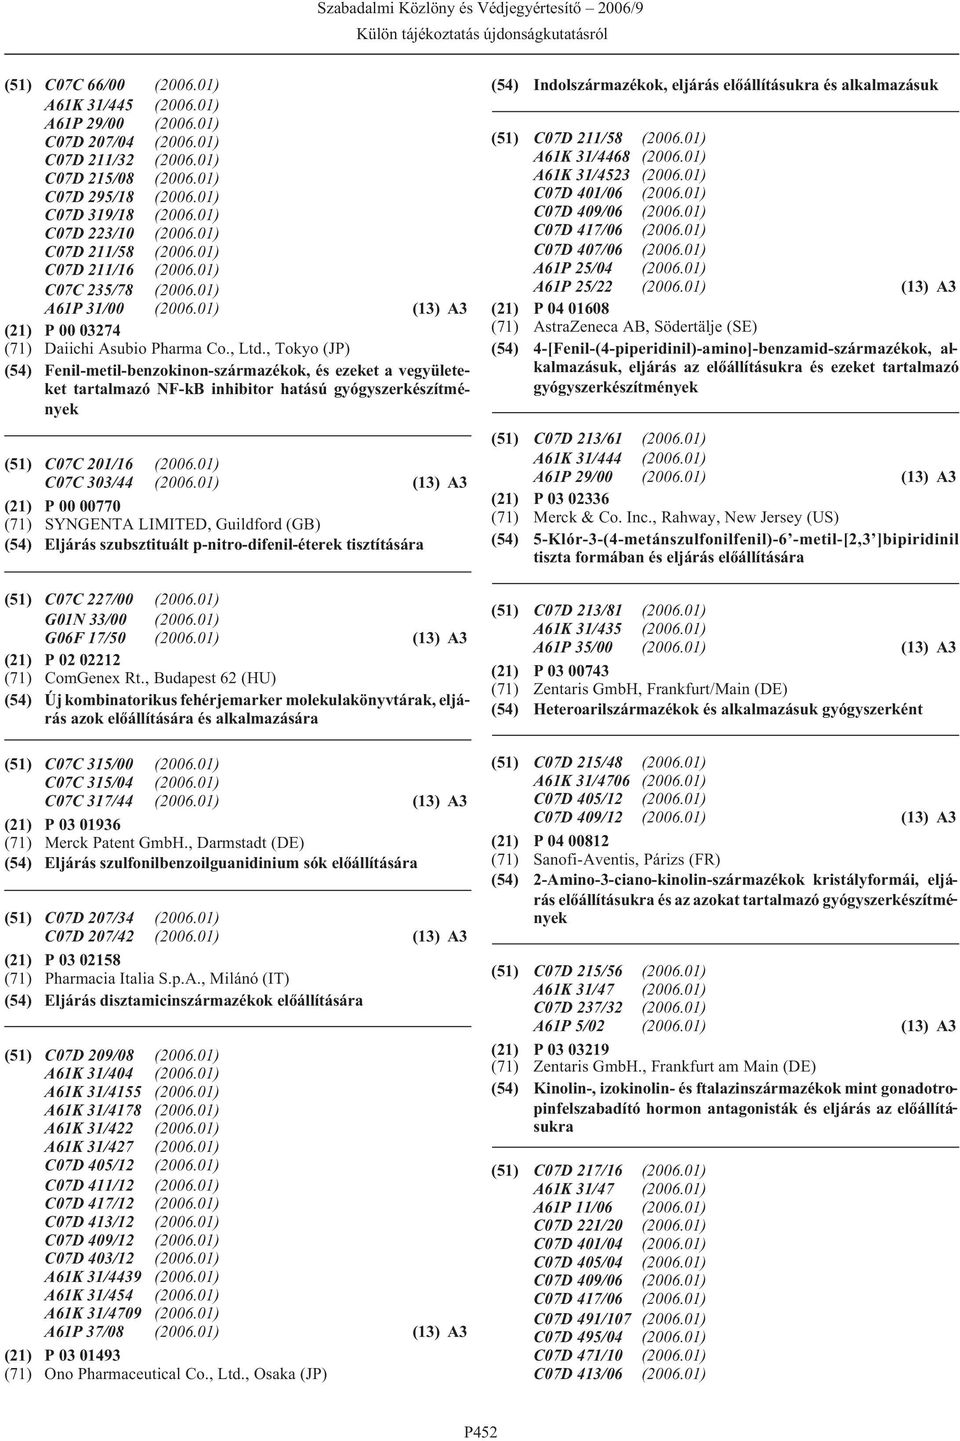 , Tokyo (JP) (54) Fenil-metil-benzokinon-származékok, és ezeket a vegyületeket tartalmazó NF-kB inhibitor hatású gyógyszerkészítmények (51) C07C 201/16 (2006.01) C07C 303/44 (2006.